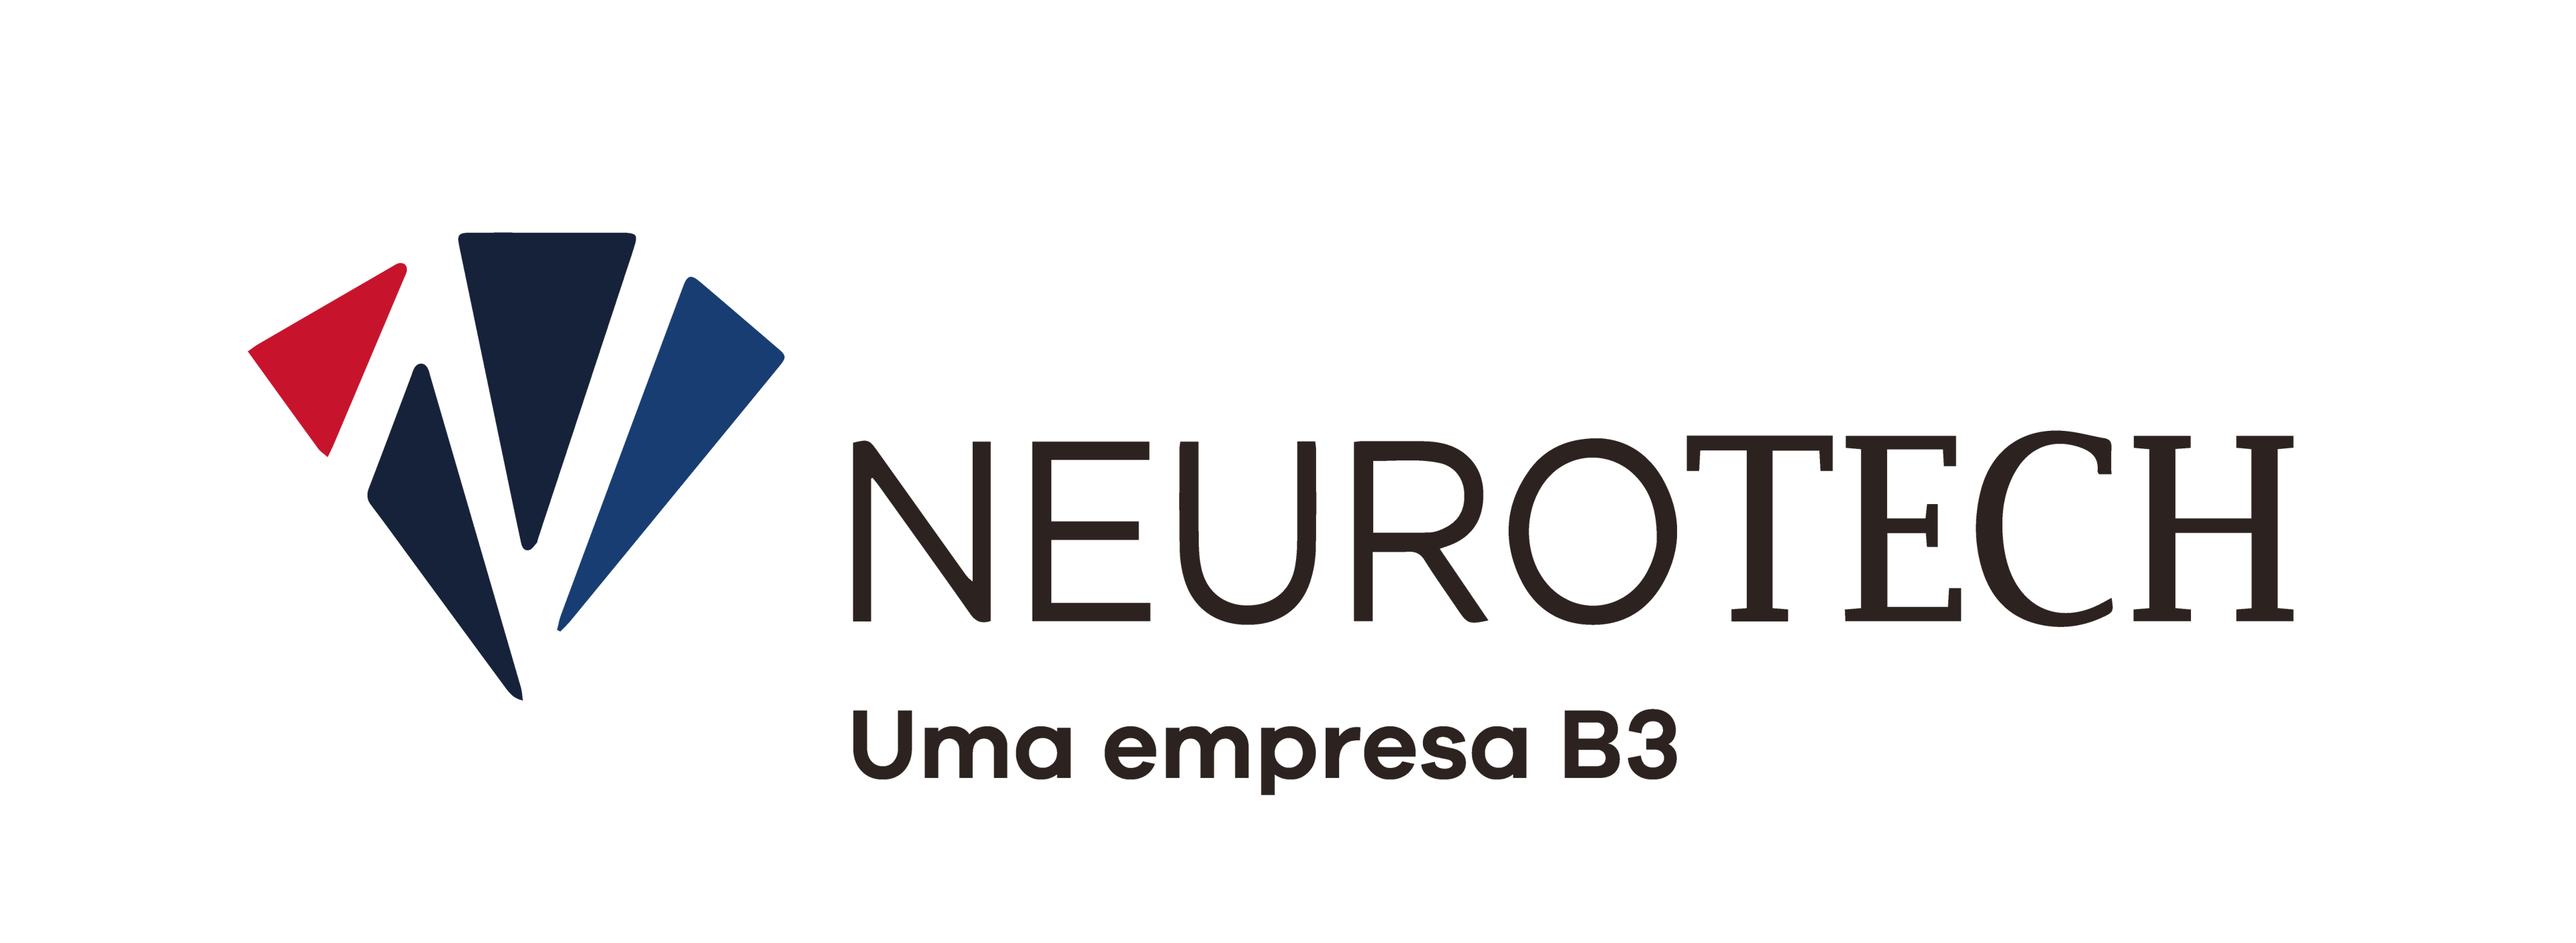 Neurotech logo